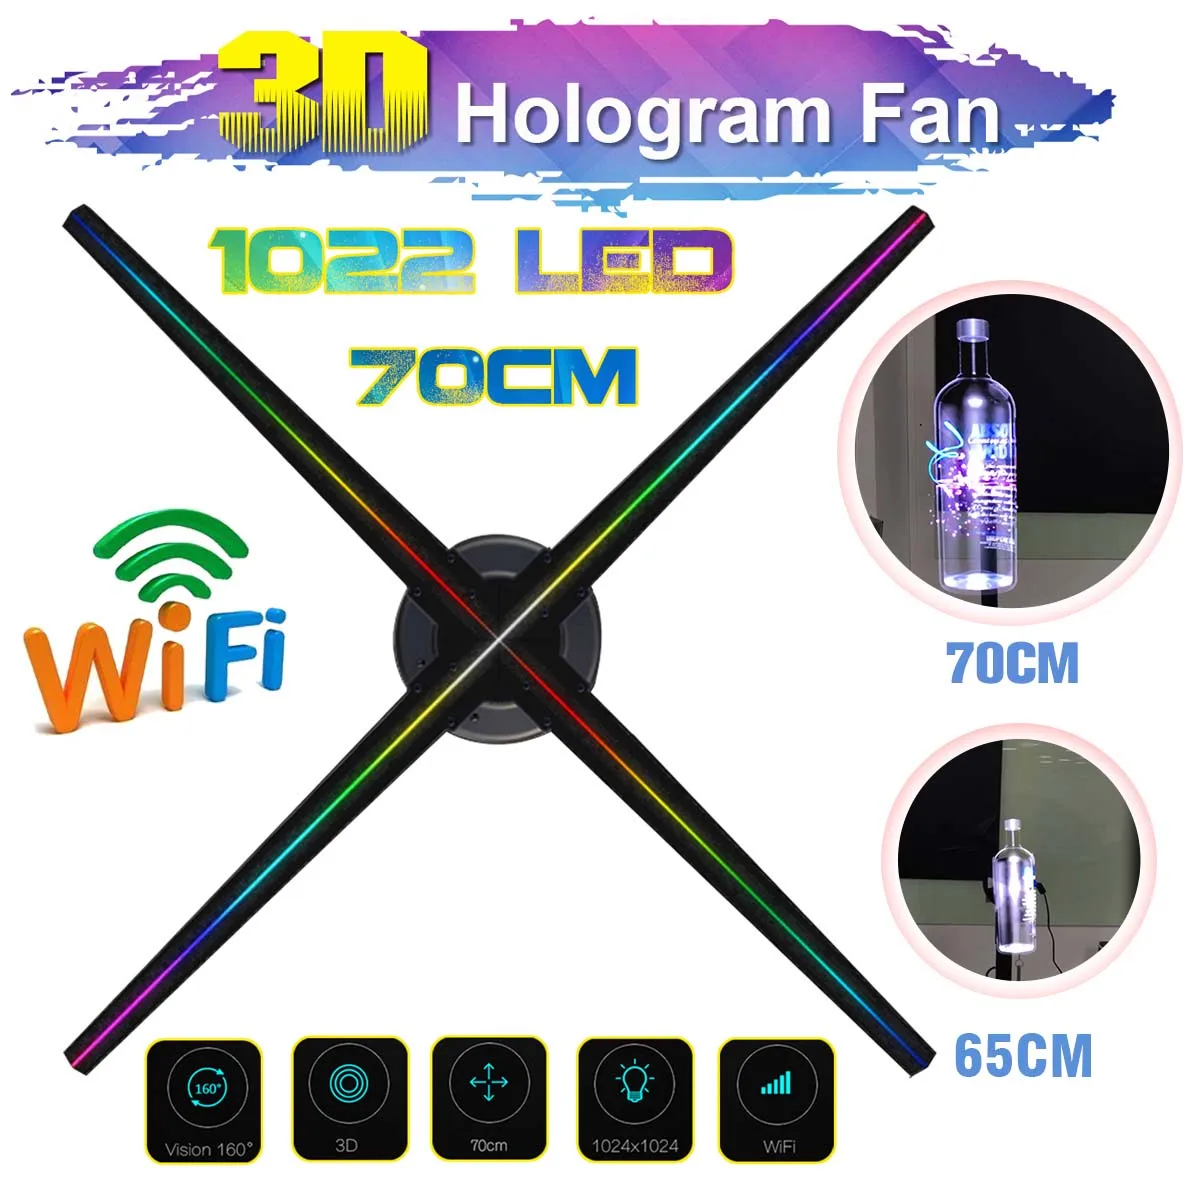 Billige Verbesserte 100CM Wifi 3D Holographische Projektor Hologramm Player Led anzeige Fan Werbung Licht APP Control Mit Batterie Im Freien